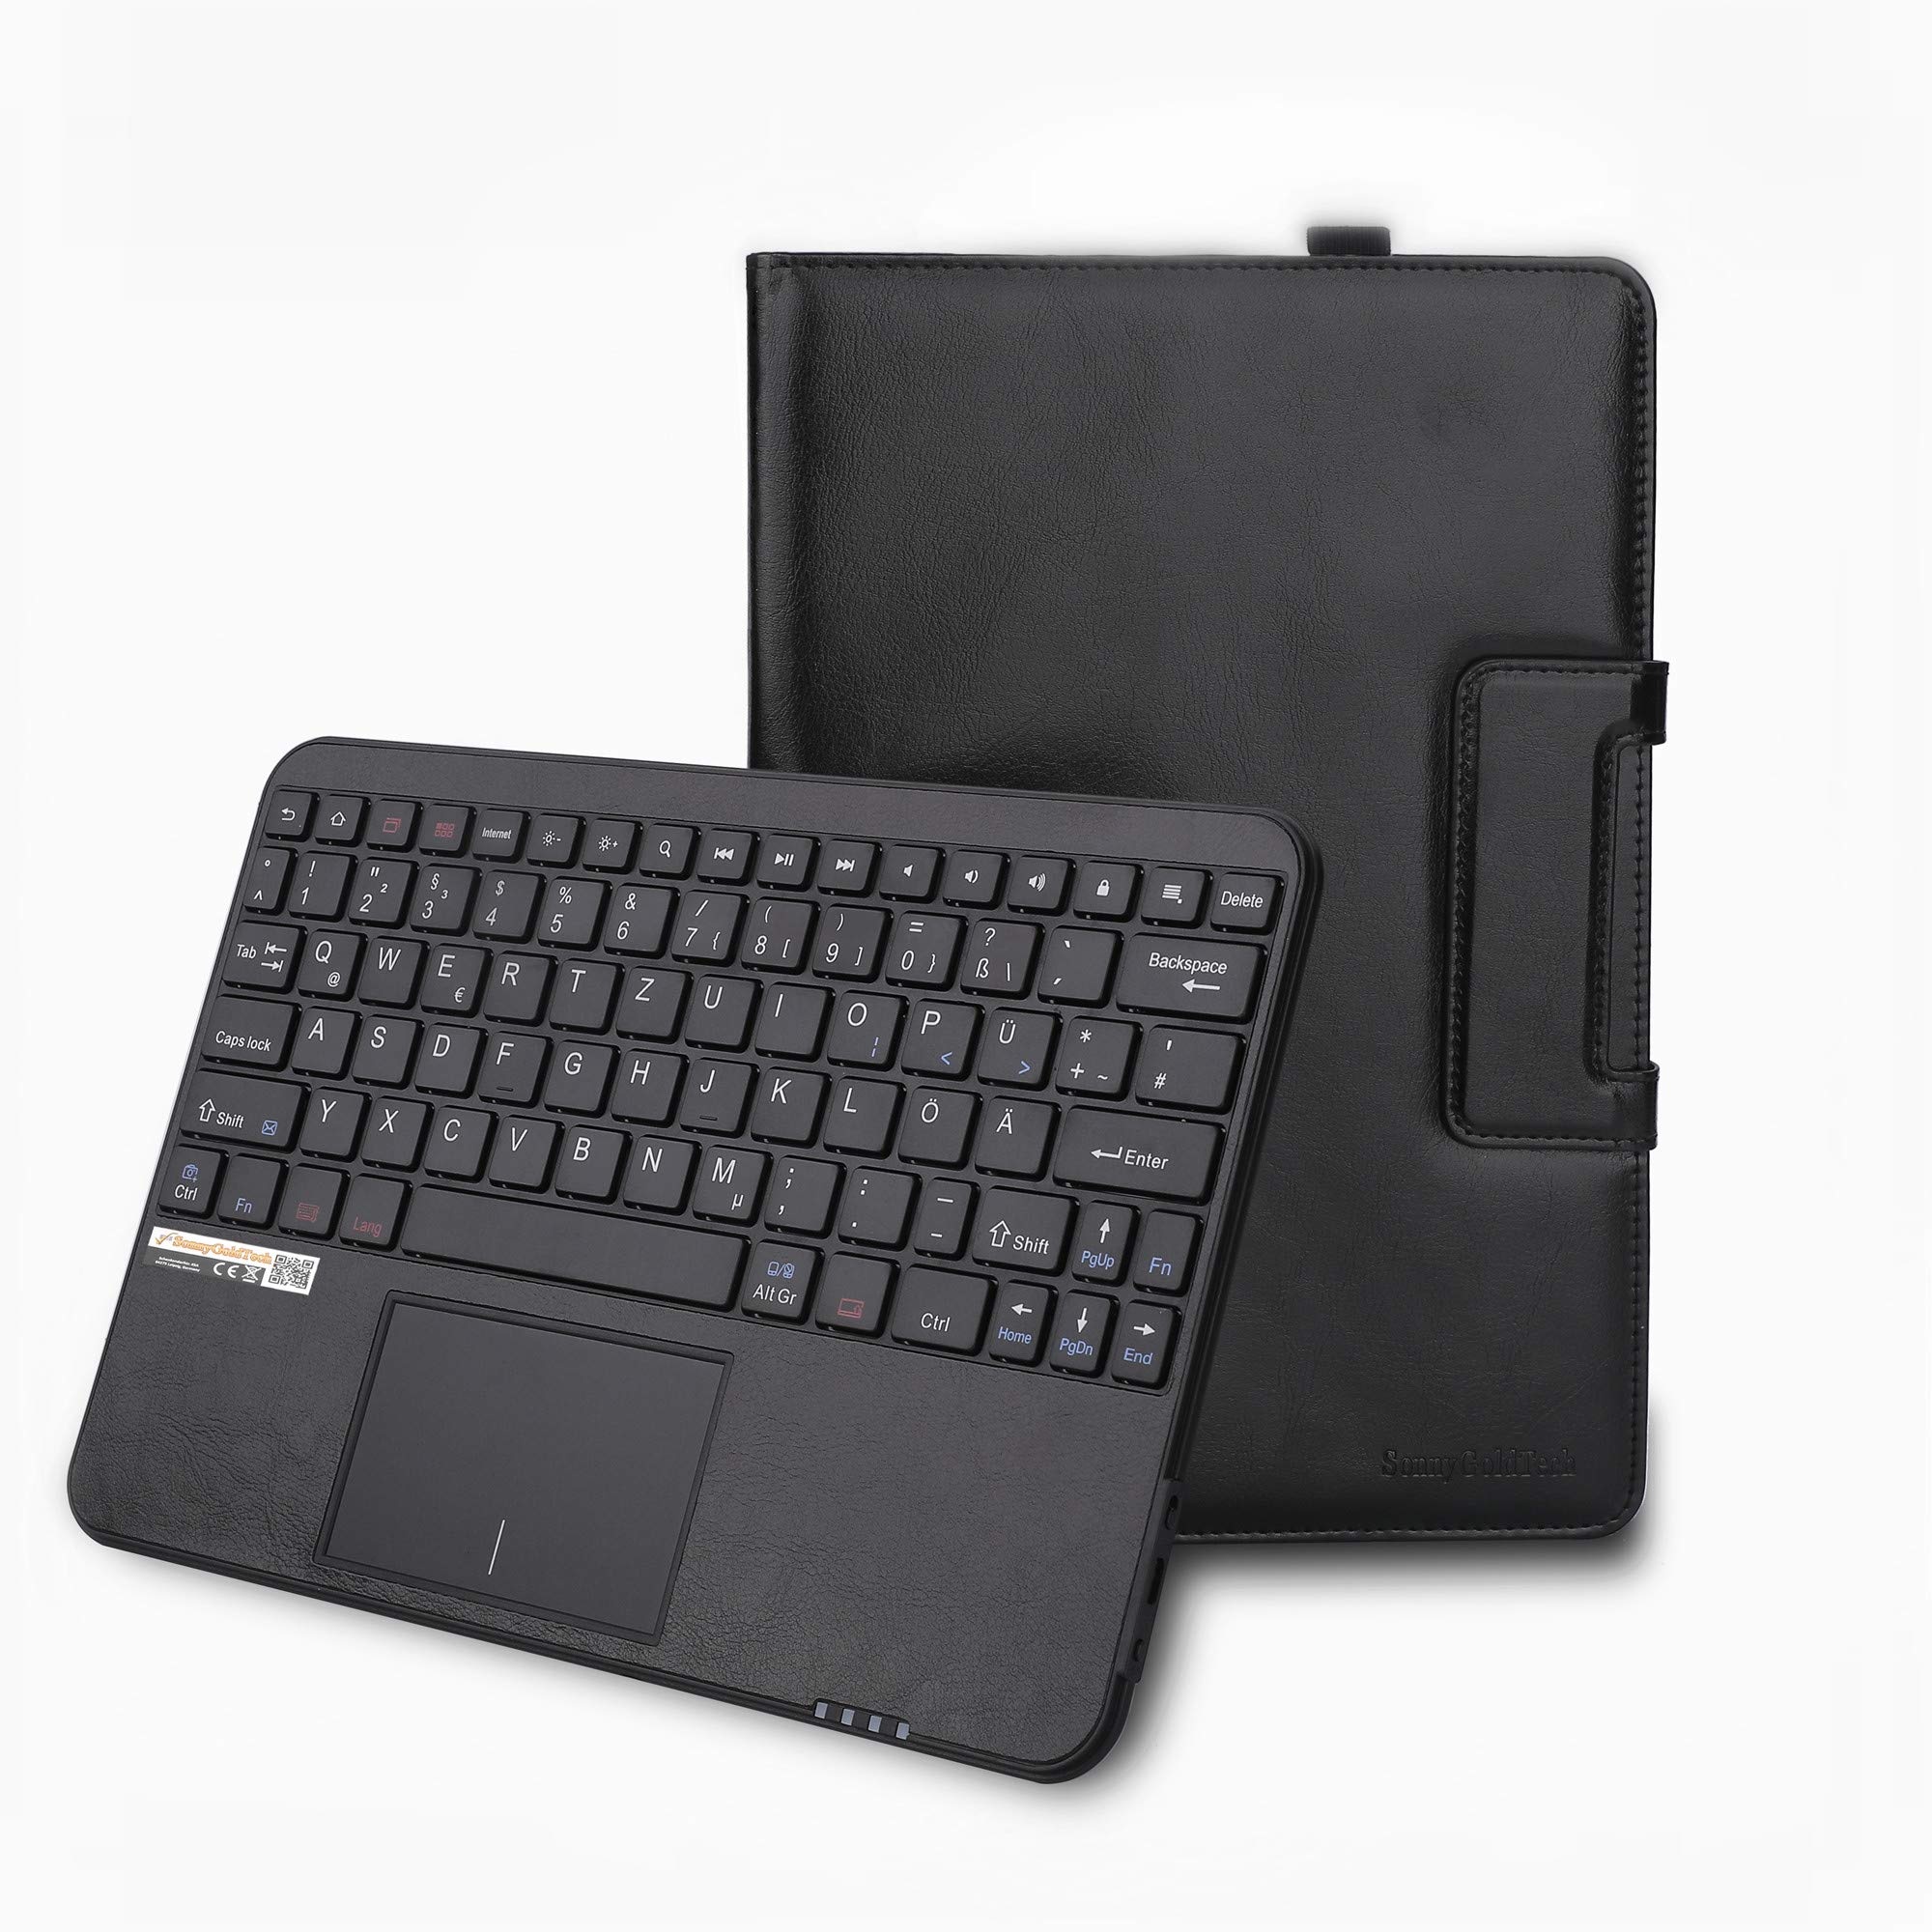 MQ für Galaxy Tab A 10.5 - Bluetooth Tastatur Tasche mit Multifunktions-Touchpad für Samsung Galaxy Tab A 10.5 | Tastatur Hülle für Galaxy Tab A 10.5 LTE SM-T595 WiFi T590 | Tastatur Deutsch QWERTZ